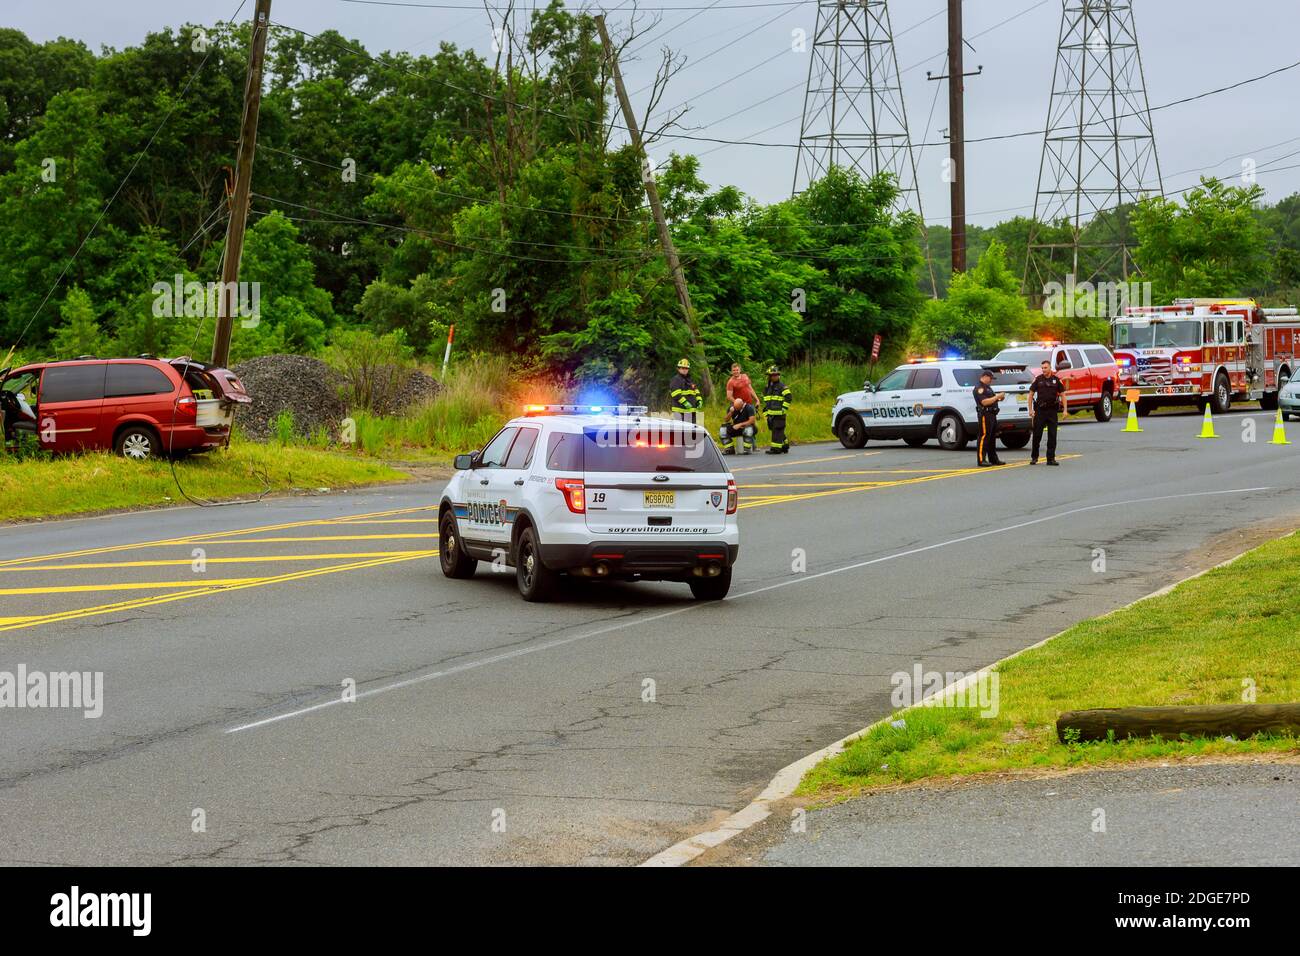 Sayreville NJ USA - Jujy 02, 2018: Luci blu lampeggianti polizia in caso di incidente auto danneggiata Foto Stock